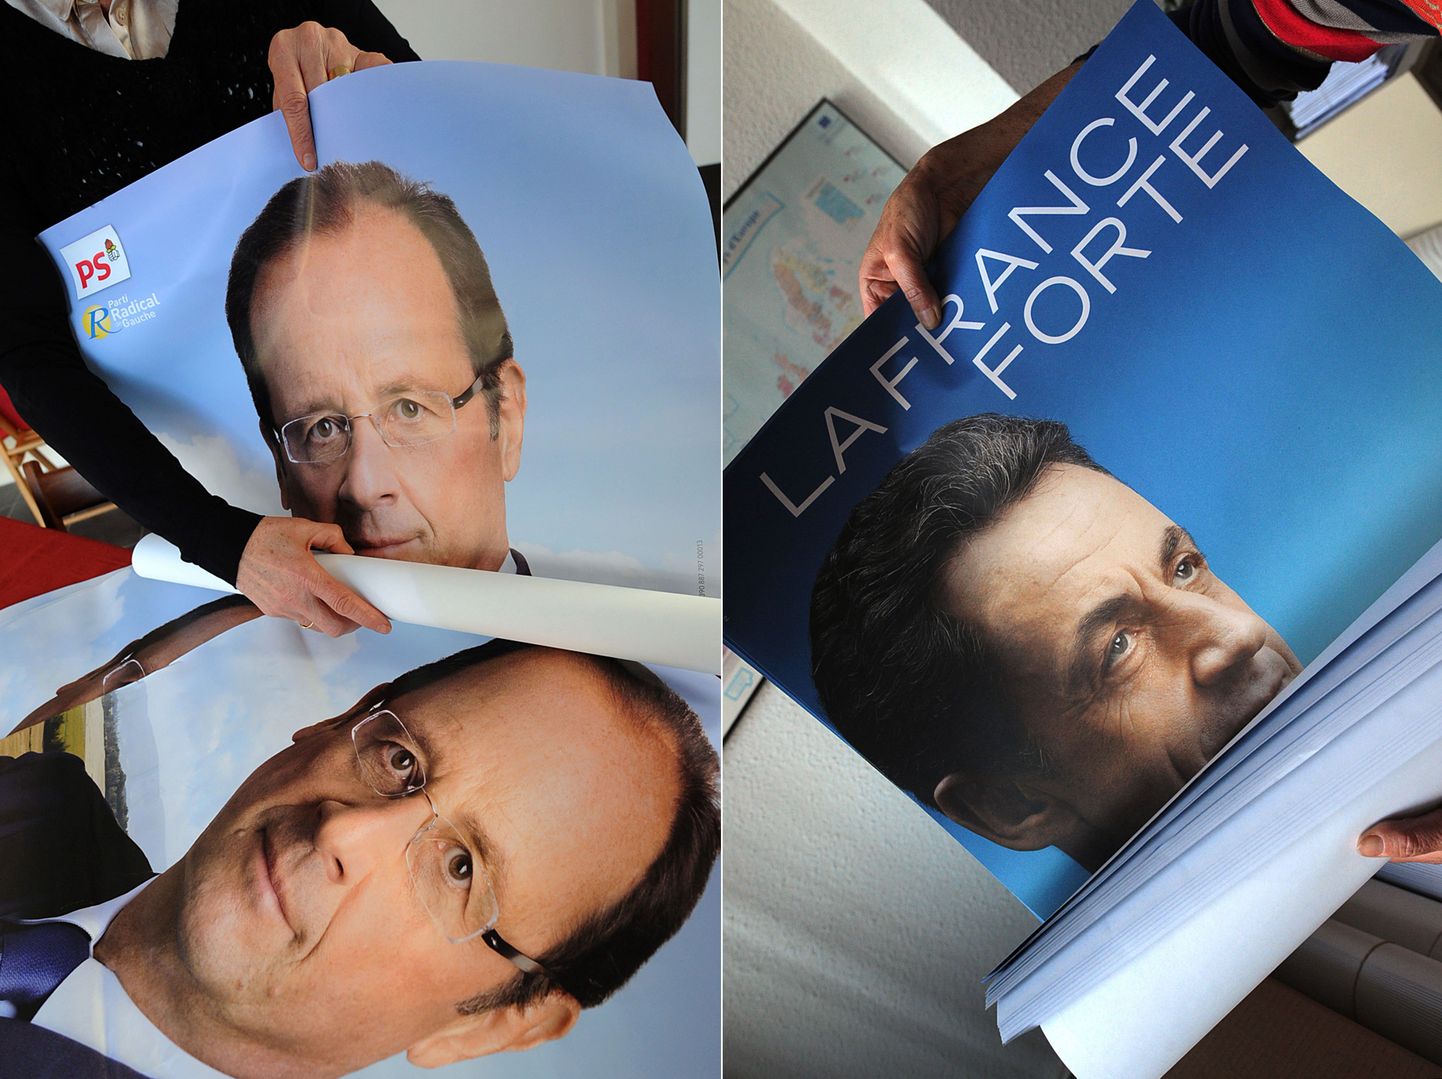 Kahe peamise kandidaadi plakatid: vasakul François Hollande, paremal Nicolas Sarkozy.